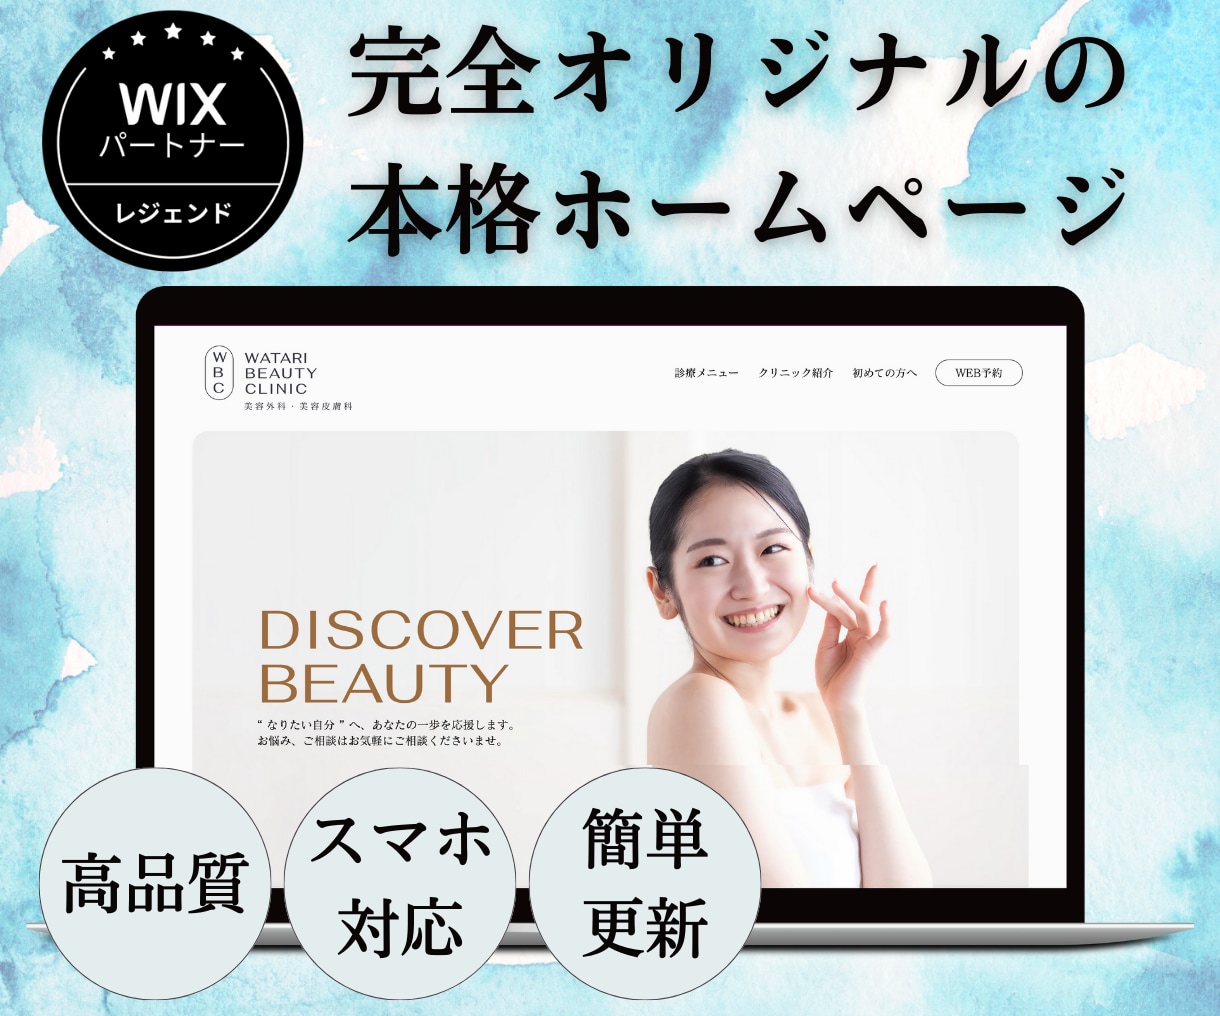 WiX公認パートナーが高品質ホームページ作成します 女性ならではの感性で、あなたの思うイメージ通りのHPを作成！ イメージ1